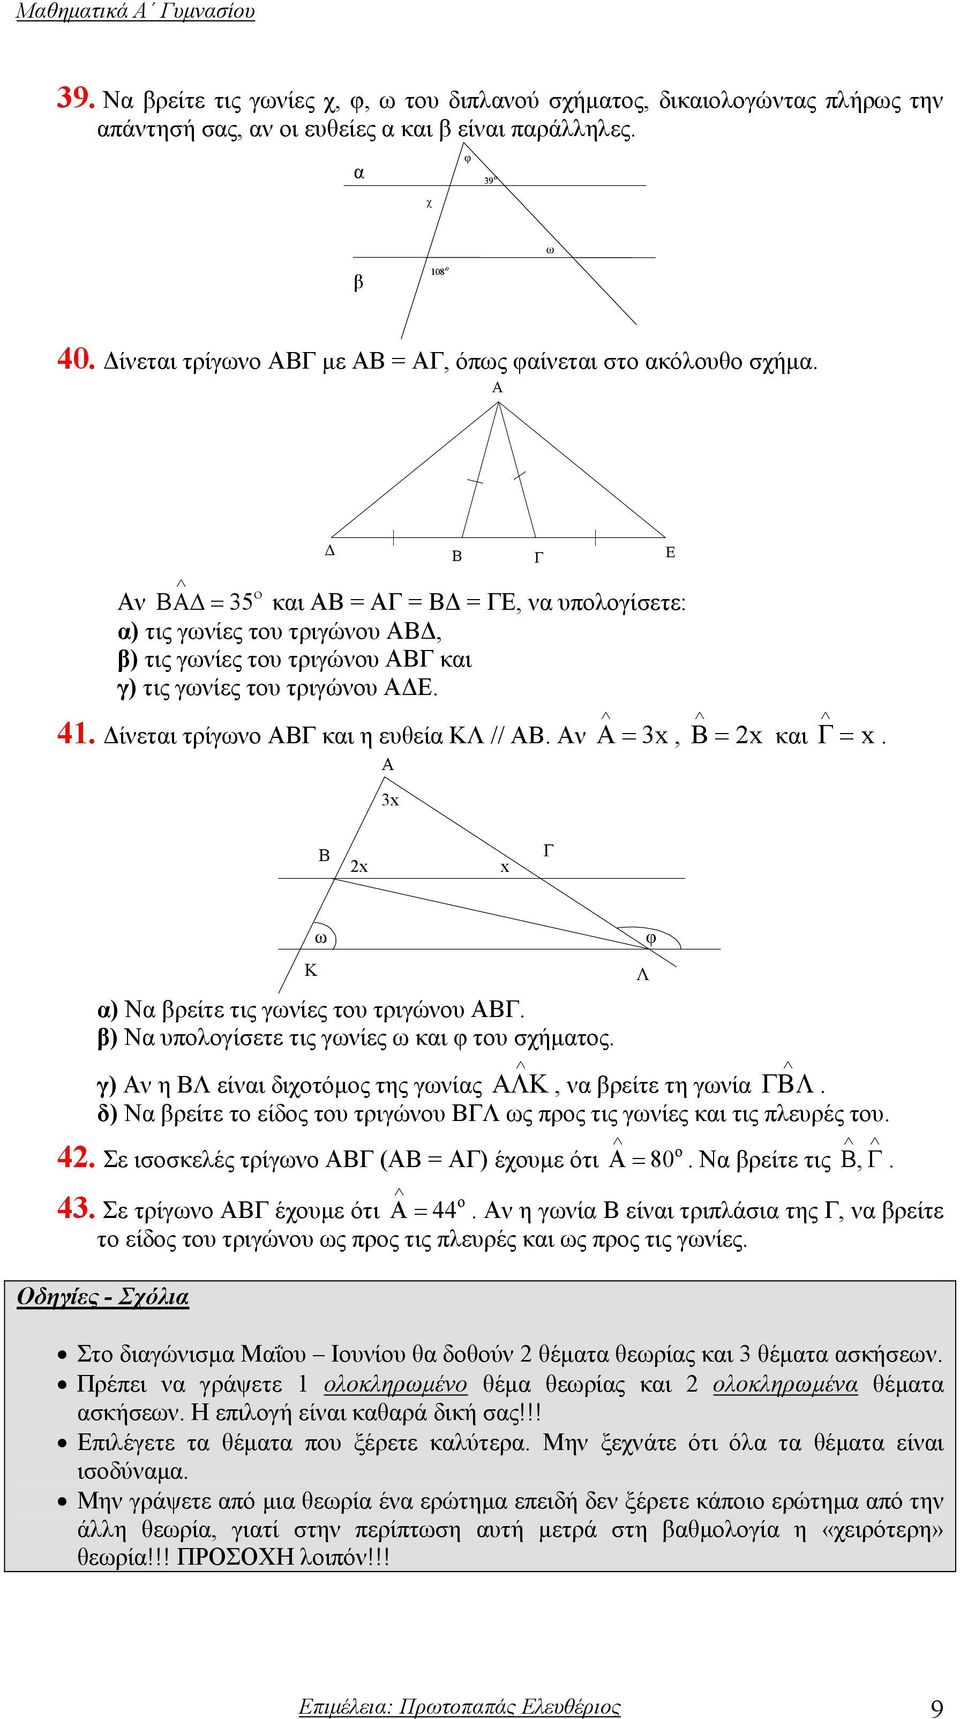 Α Β ο Αν ΒΑ = 35 και ΑΒ = ΑΓ = Β = ΓΕ, να υπολογίσετε: α) τις γωνίες του τριγώνου ΑΒ, β) τις γωνίες του τριγώνου ΑΒΓ και γ) τις γωνίες του τριγώνου Α Ε. =, B= 2x και 41.